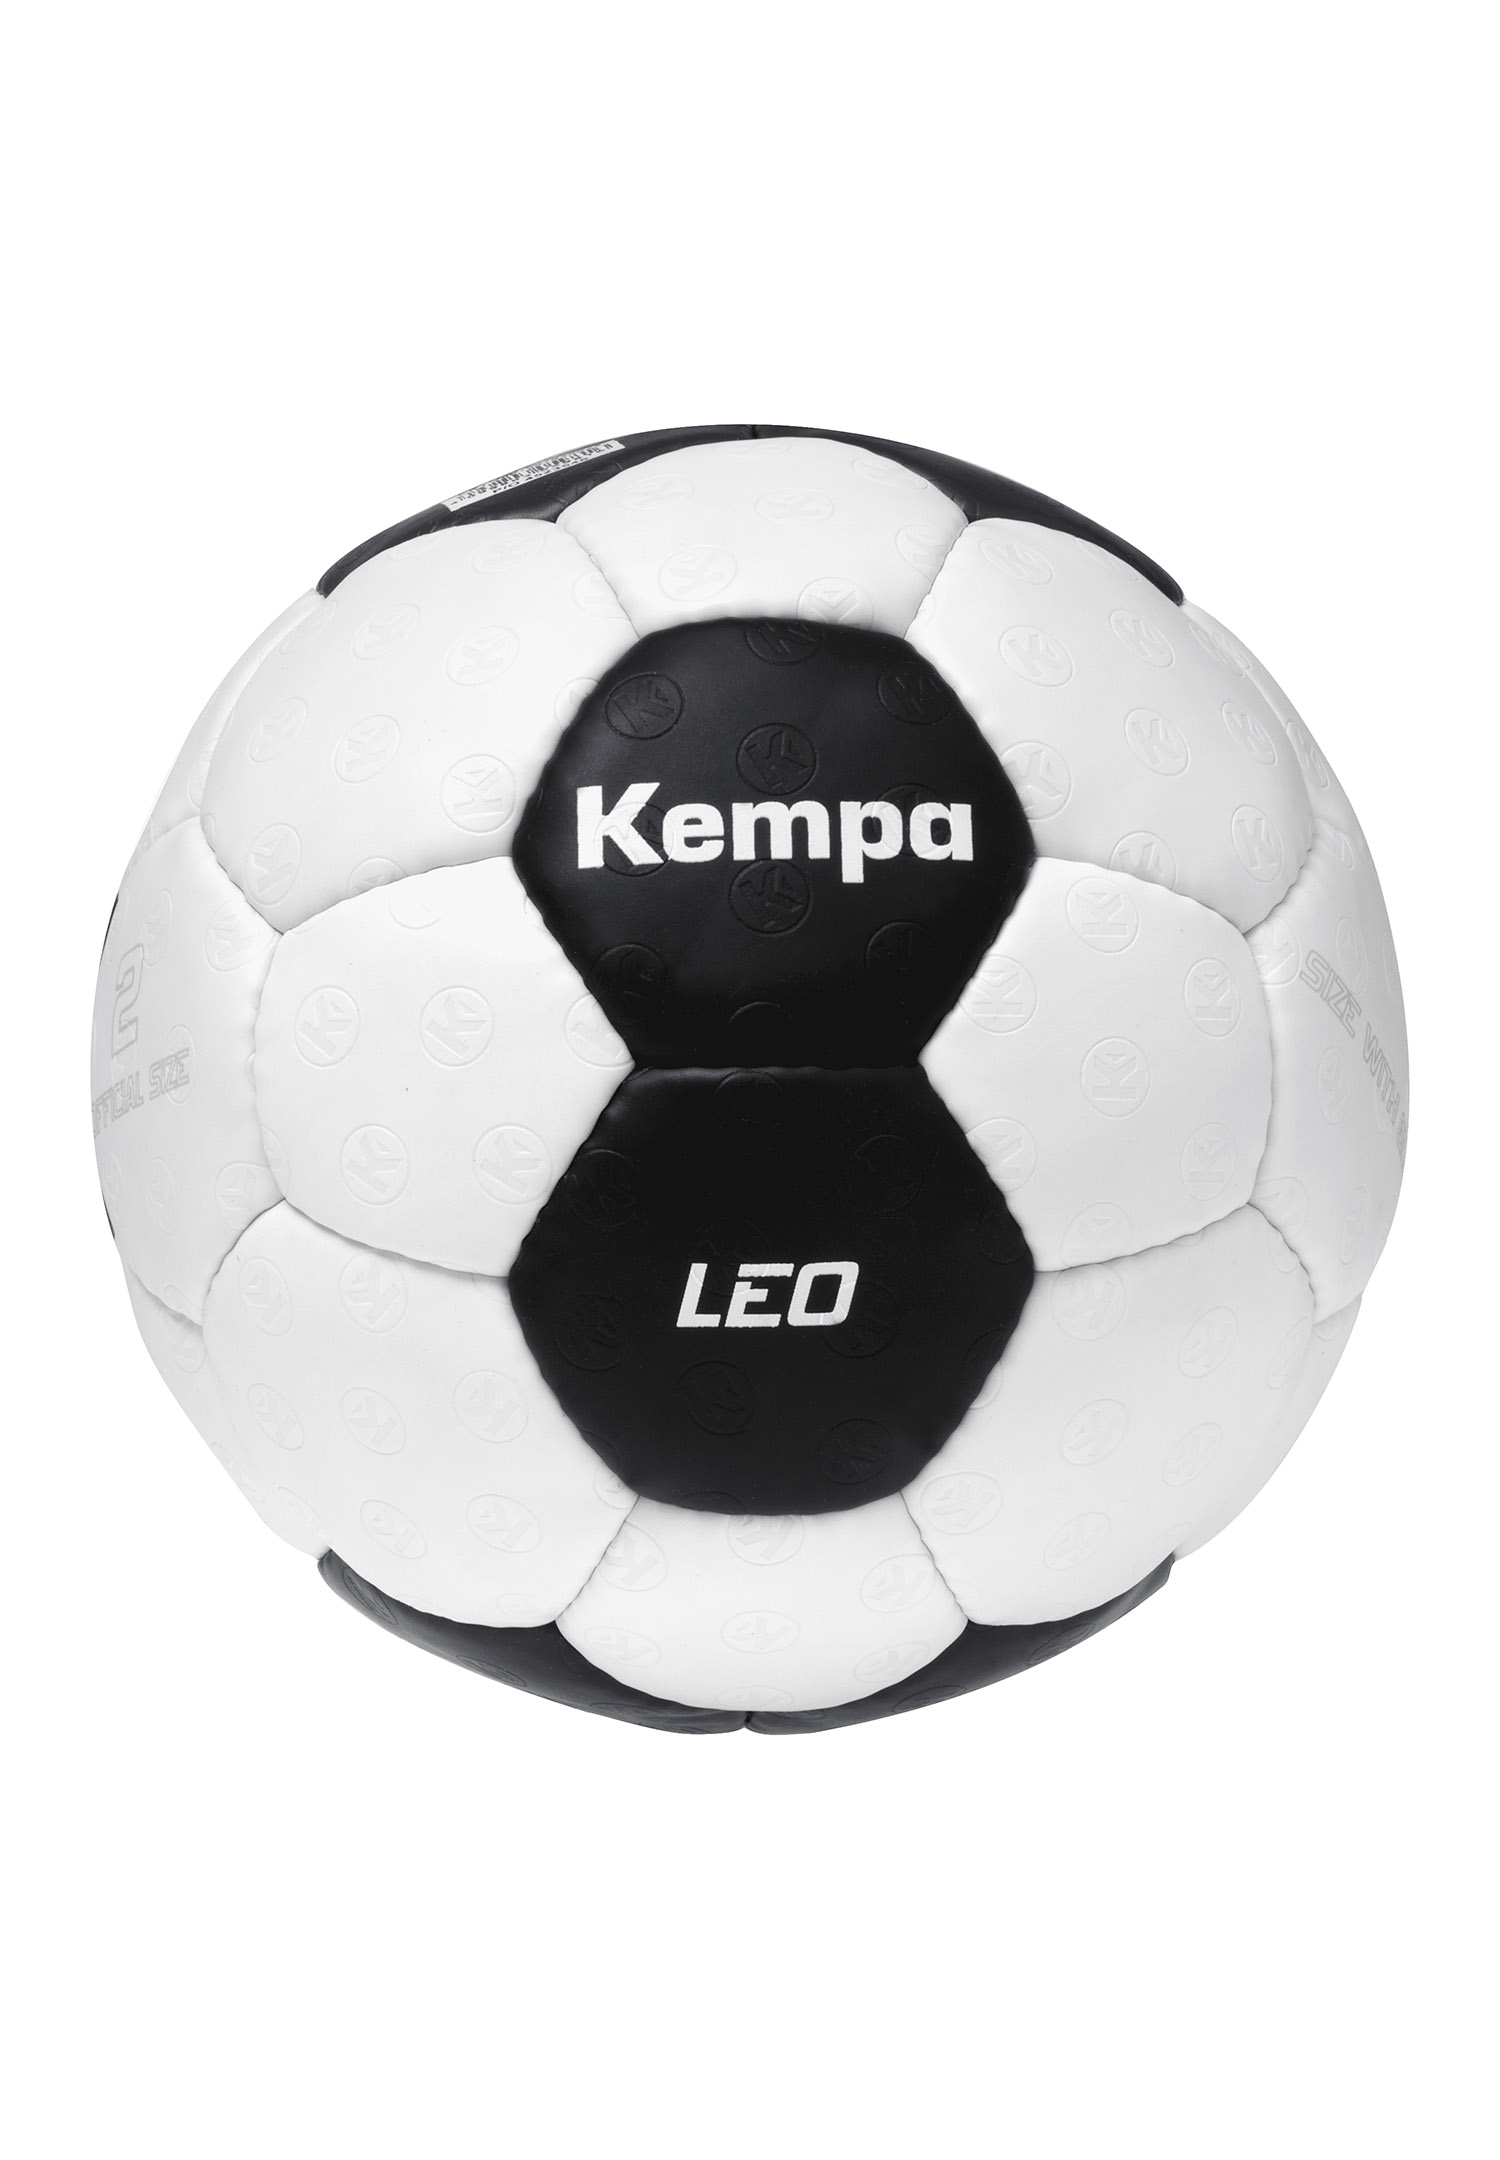 Kempa Handball Leo Size 1 200190704 grey/navy 